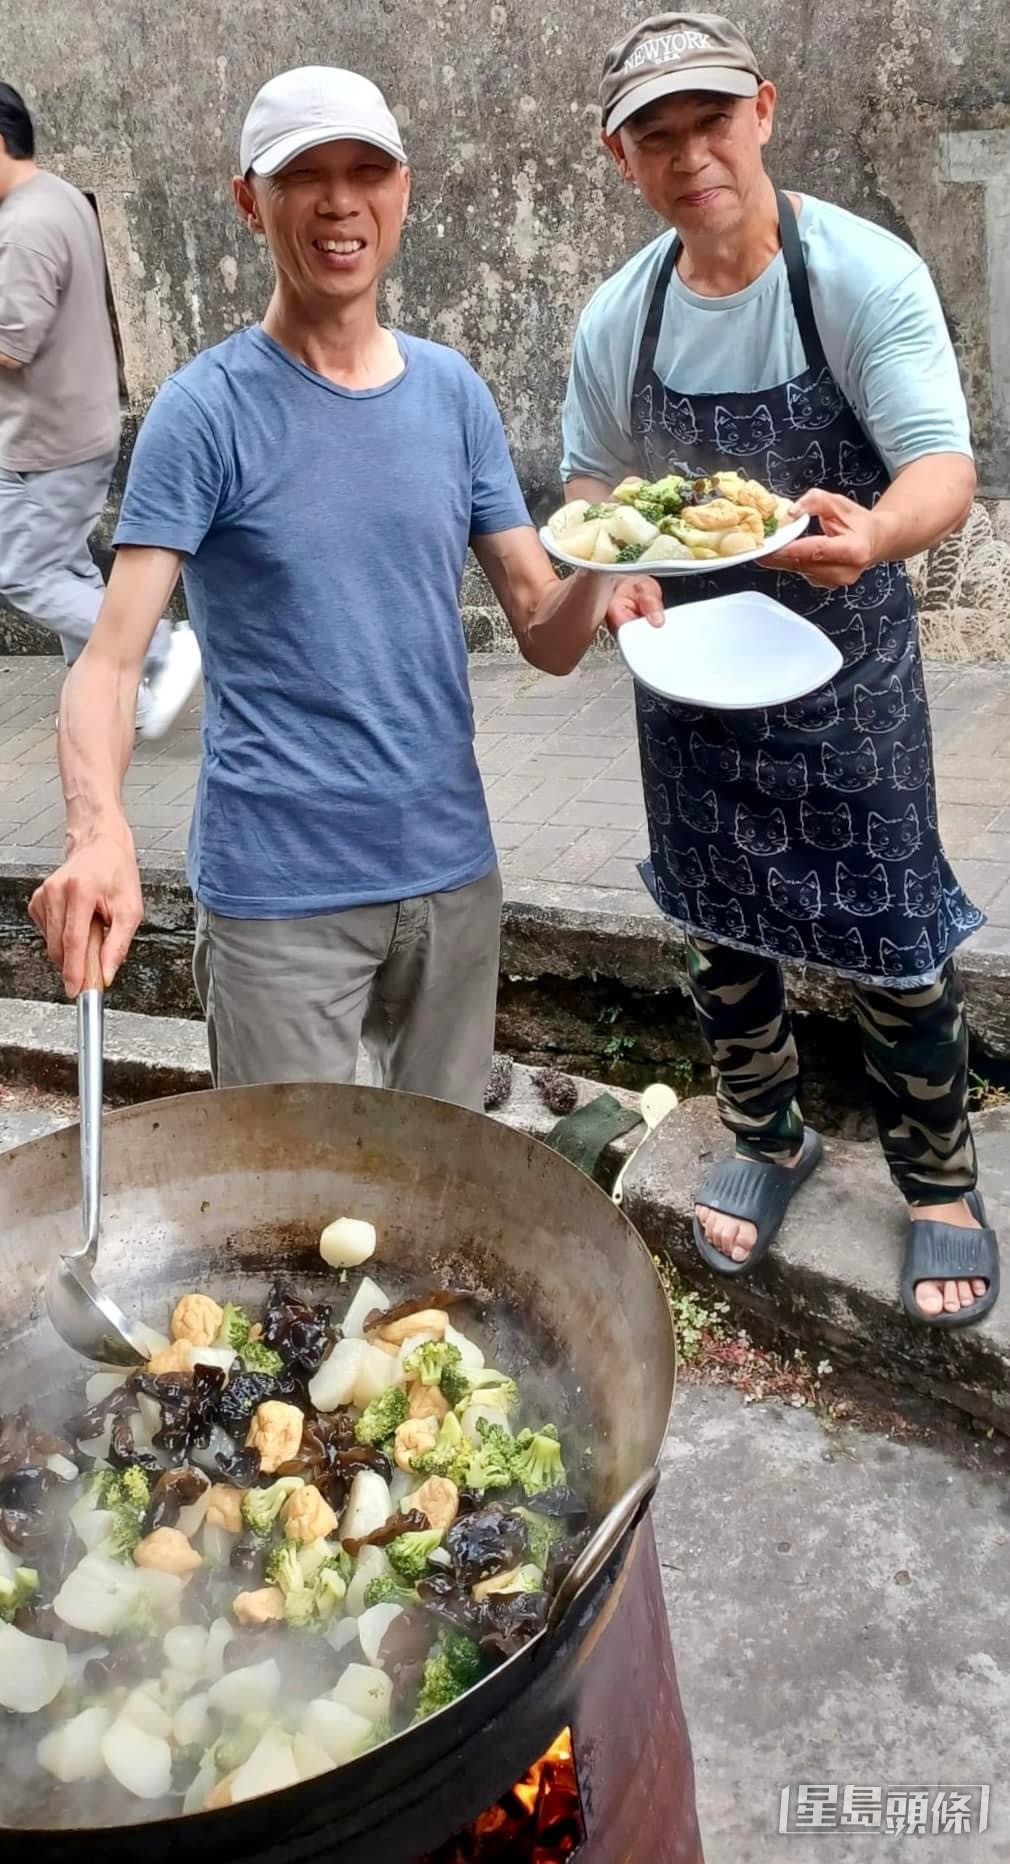 到訪荔枝窩時，黃錦星協助將農家菜「客家炒蘿蔔」上碟奉客。